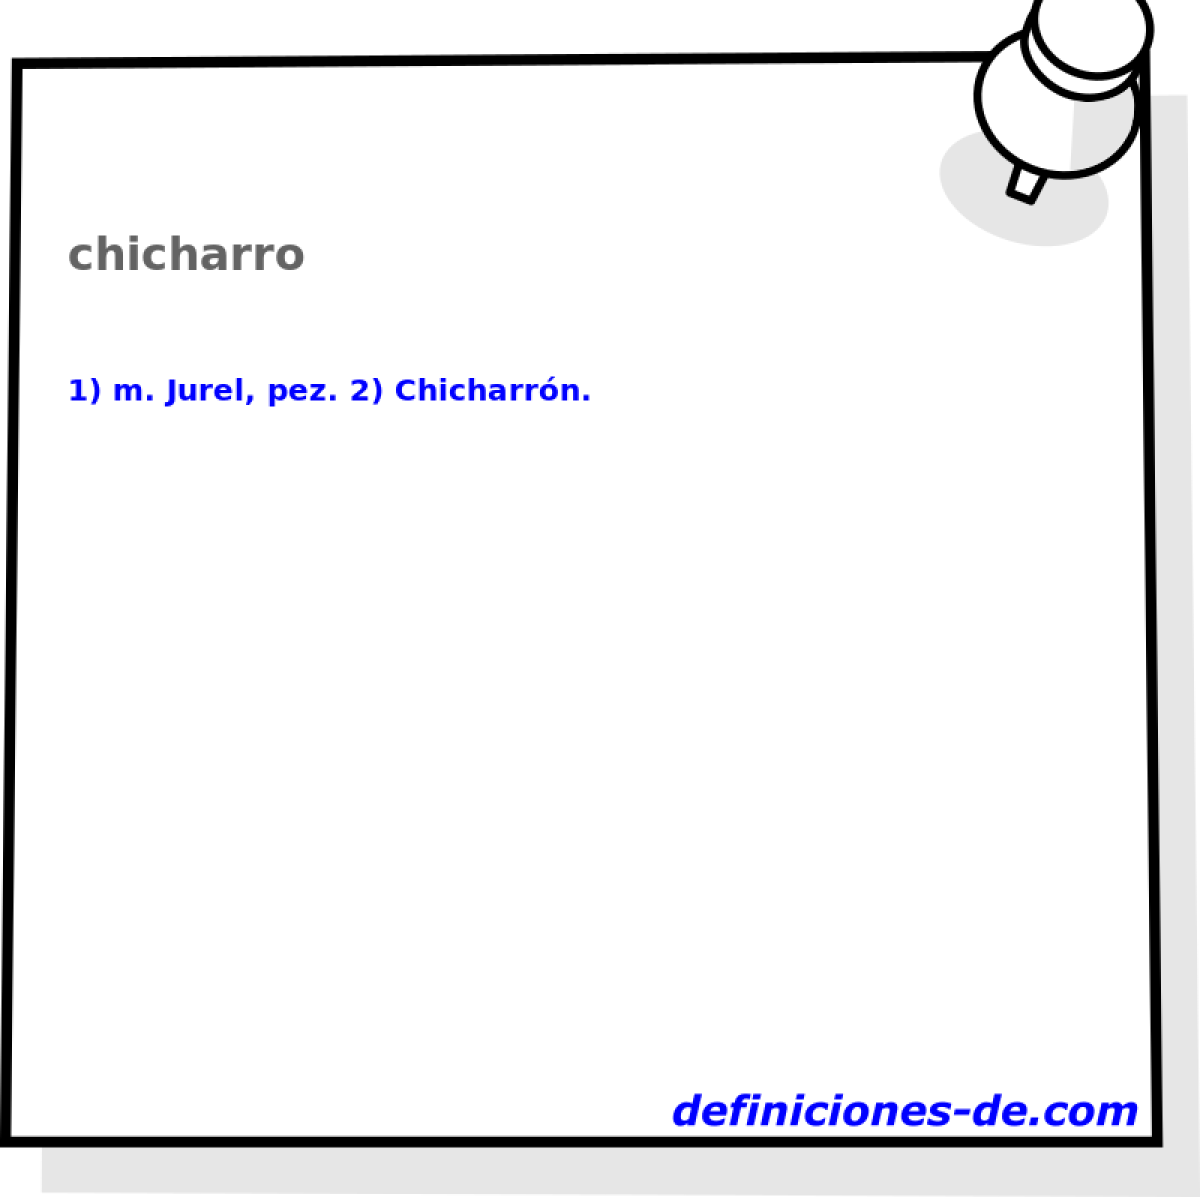 chicharro 